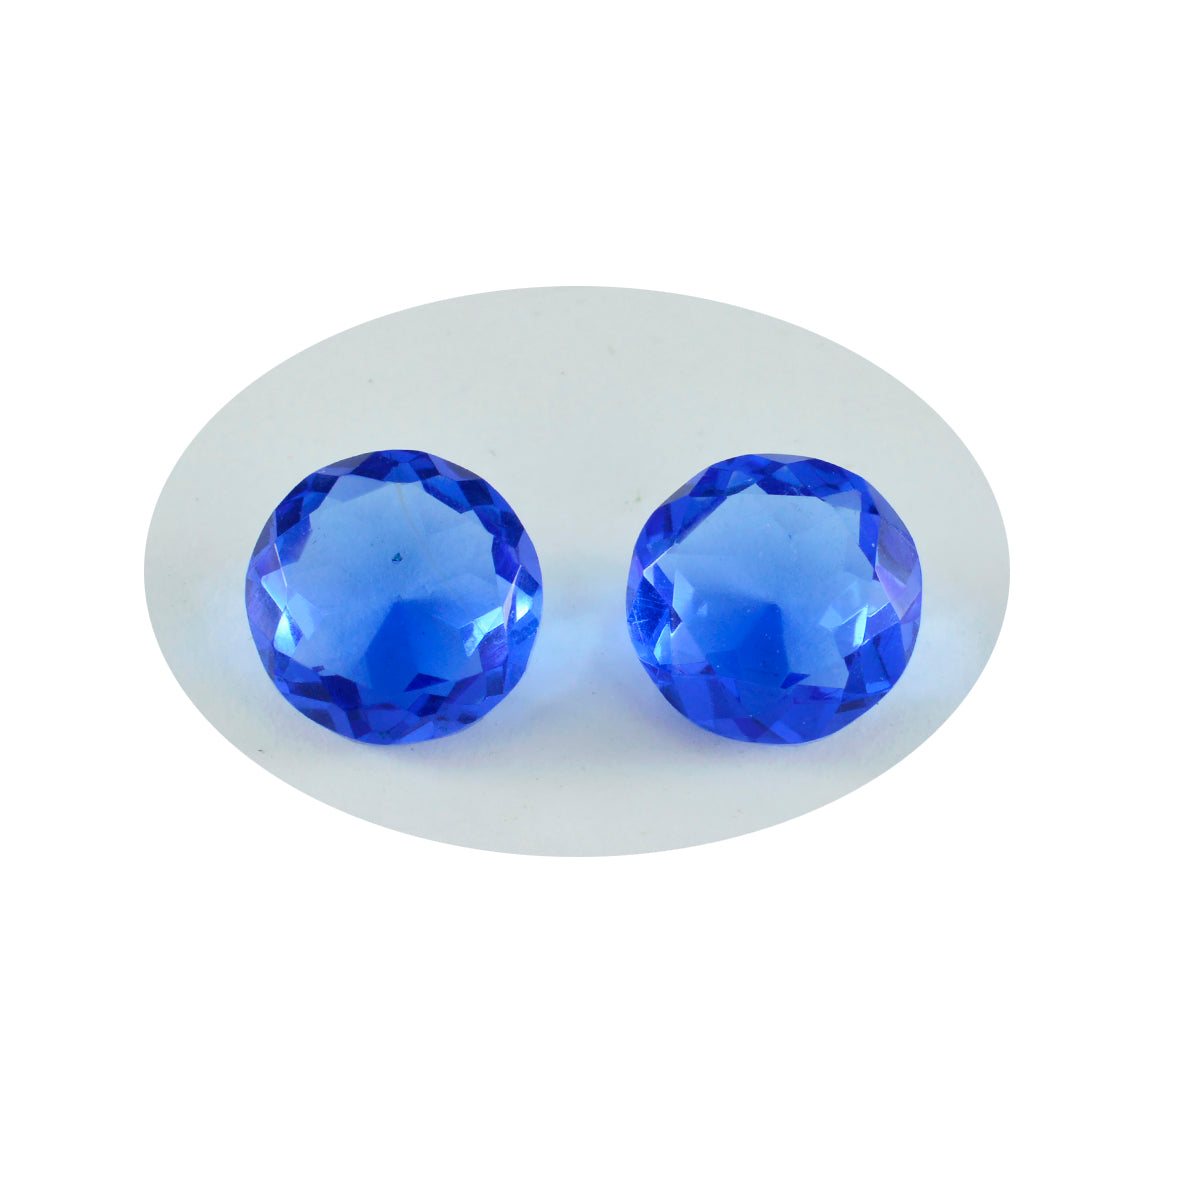 riyogems 1шт синий сапфир cz ограненный 13х13 мм круглая форма качественный камень